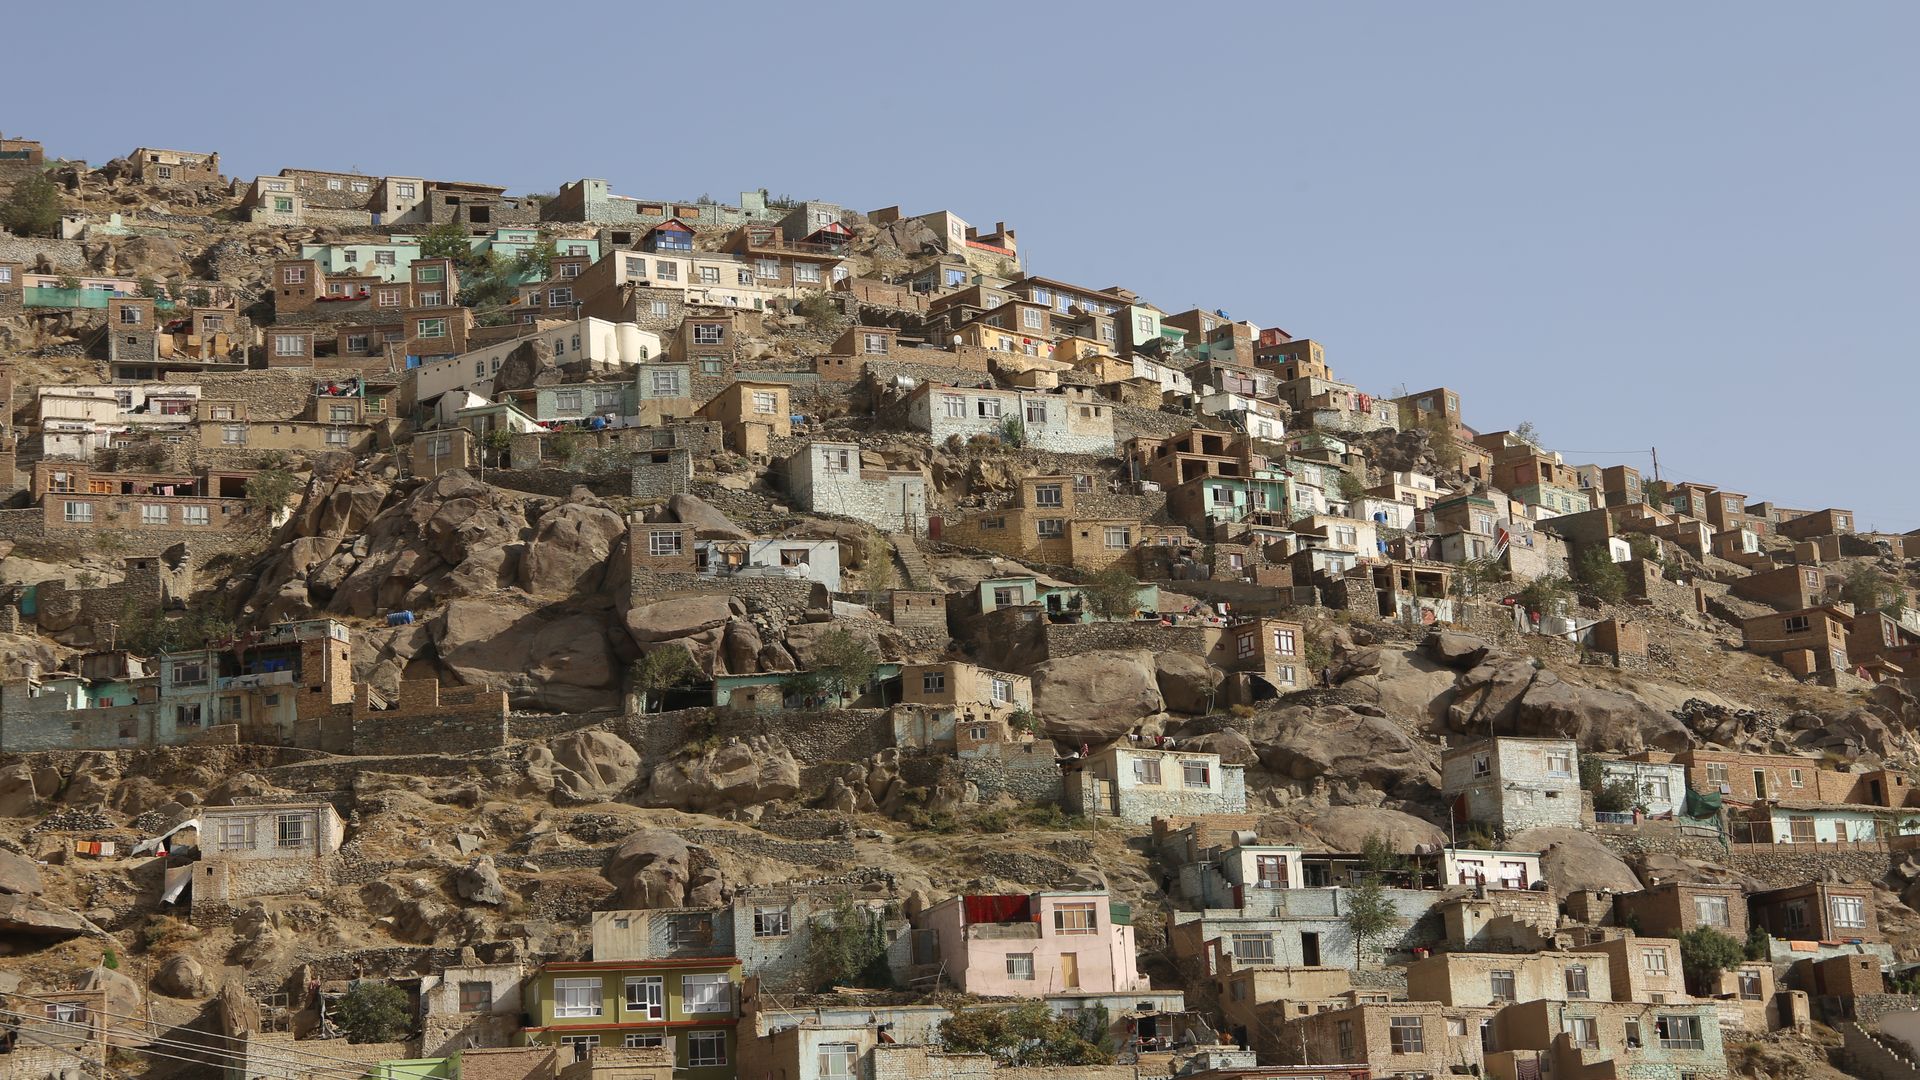 Photo of houses in Karte-Ye Sakhi